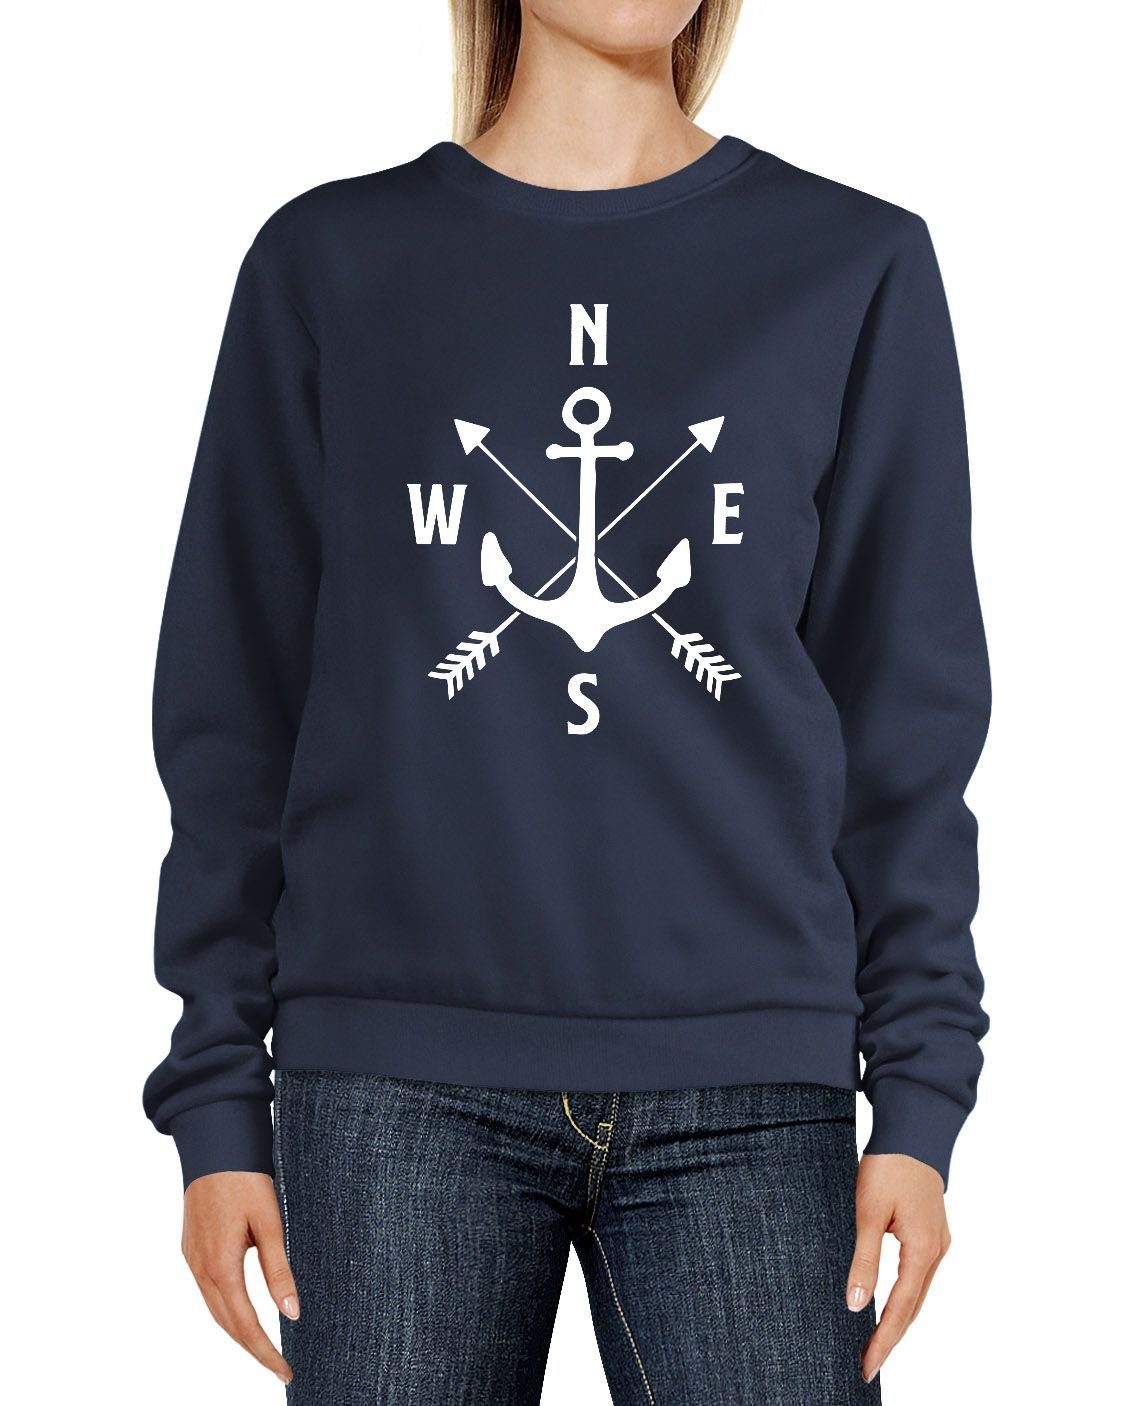 MoonWorks Sweatshirt Sweatshirt Damen Aufdruck Motiv Anker Kompass Pfeile Rundhals-Pullover Pulli Sweater Moonworks® navy